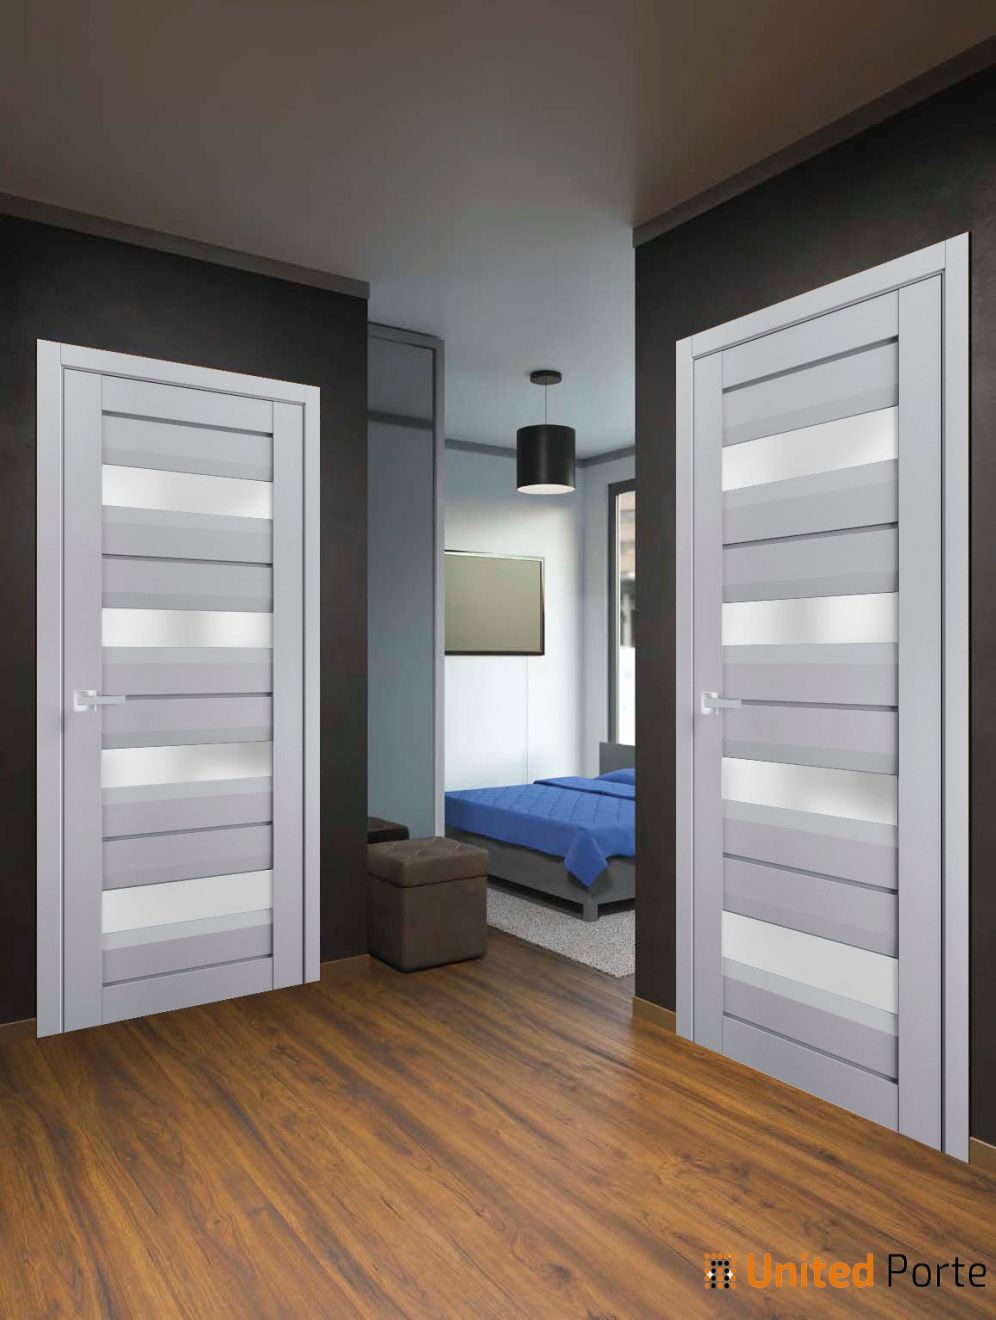 Interior Solid French Swing Door with Frosted Glass | Bathroom Bedroom Sturdy Doors | Buy Doors Online